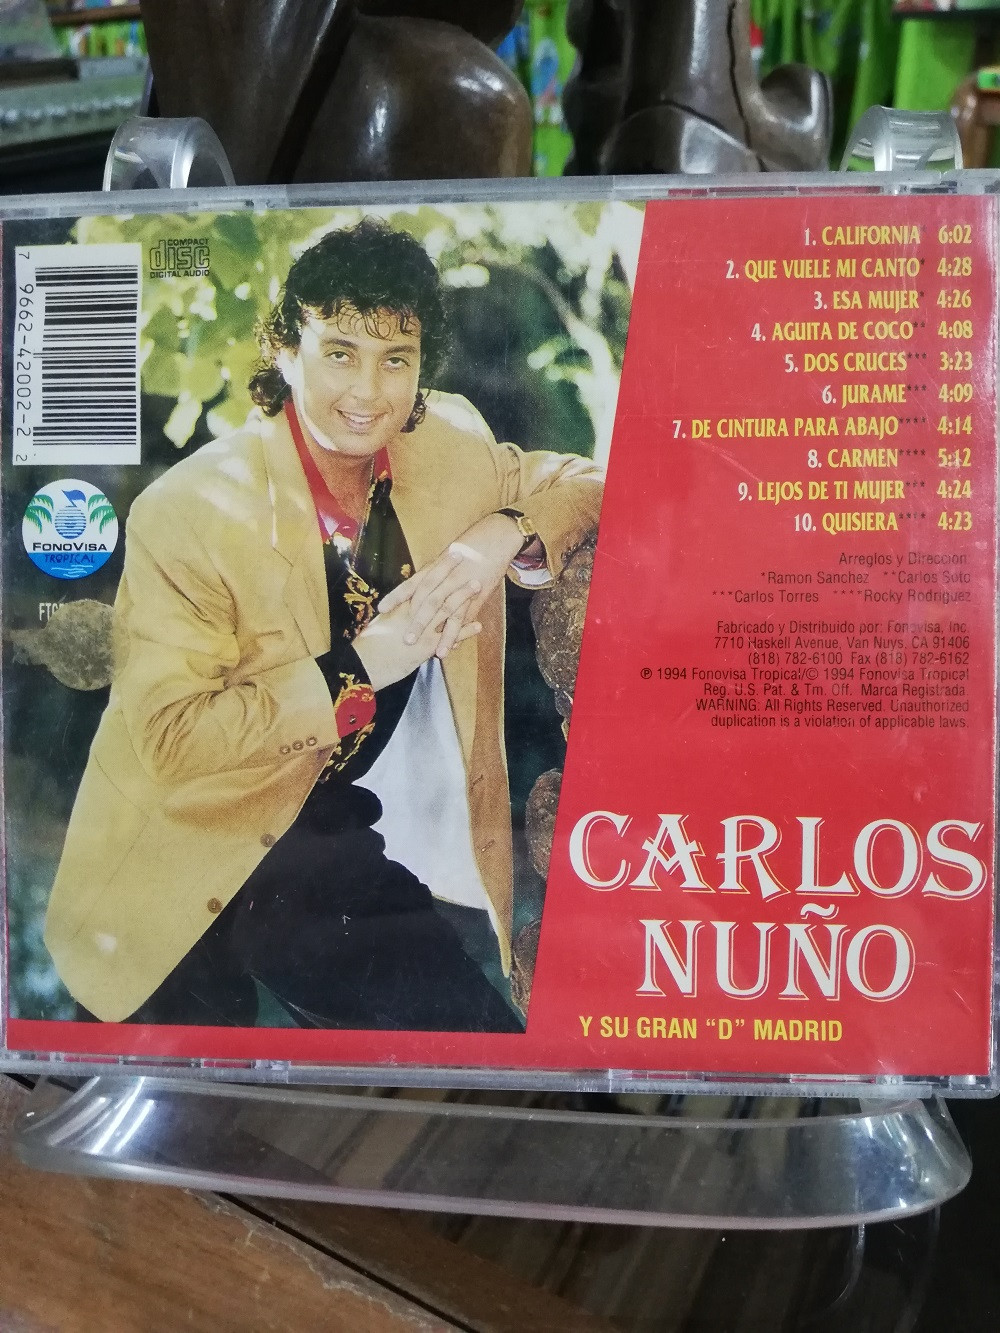 Imagen CD CARLOS NUÑO Y SU GRAN "D" MADRID - DE CINTURA PARA ABAJO 2